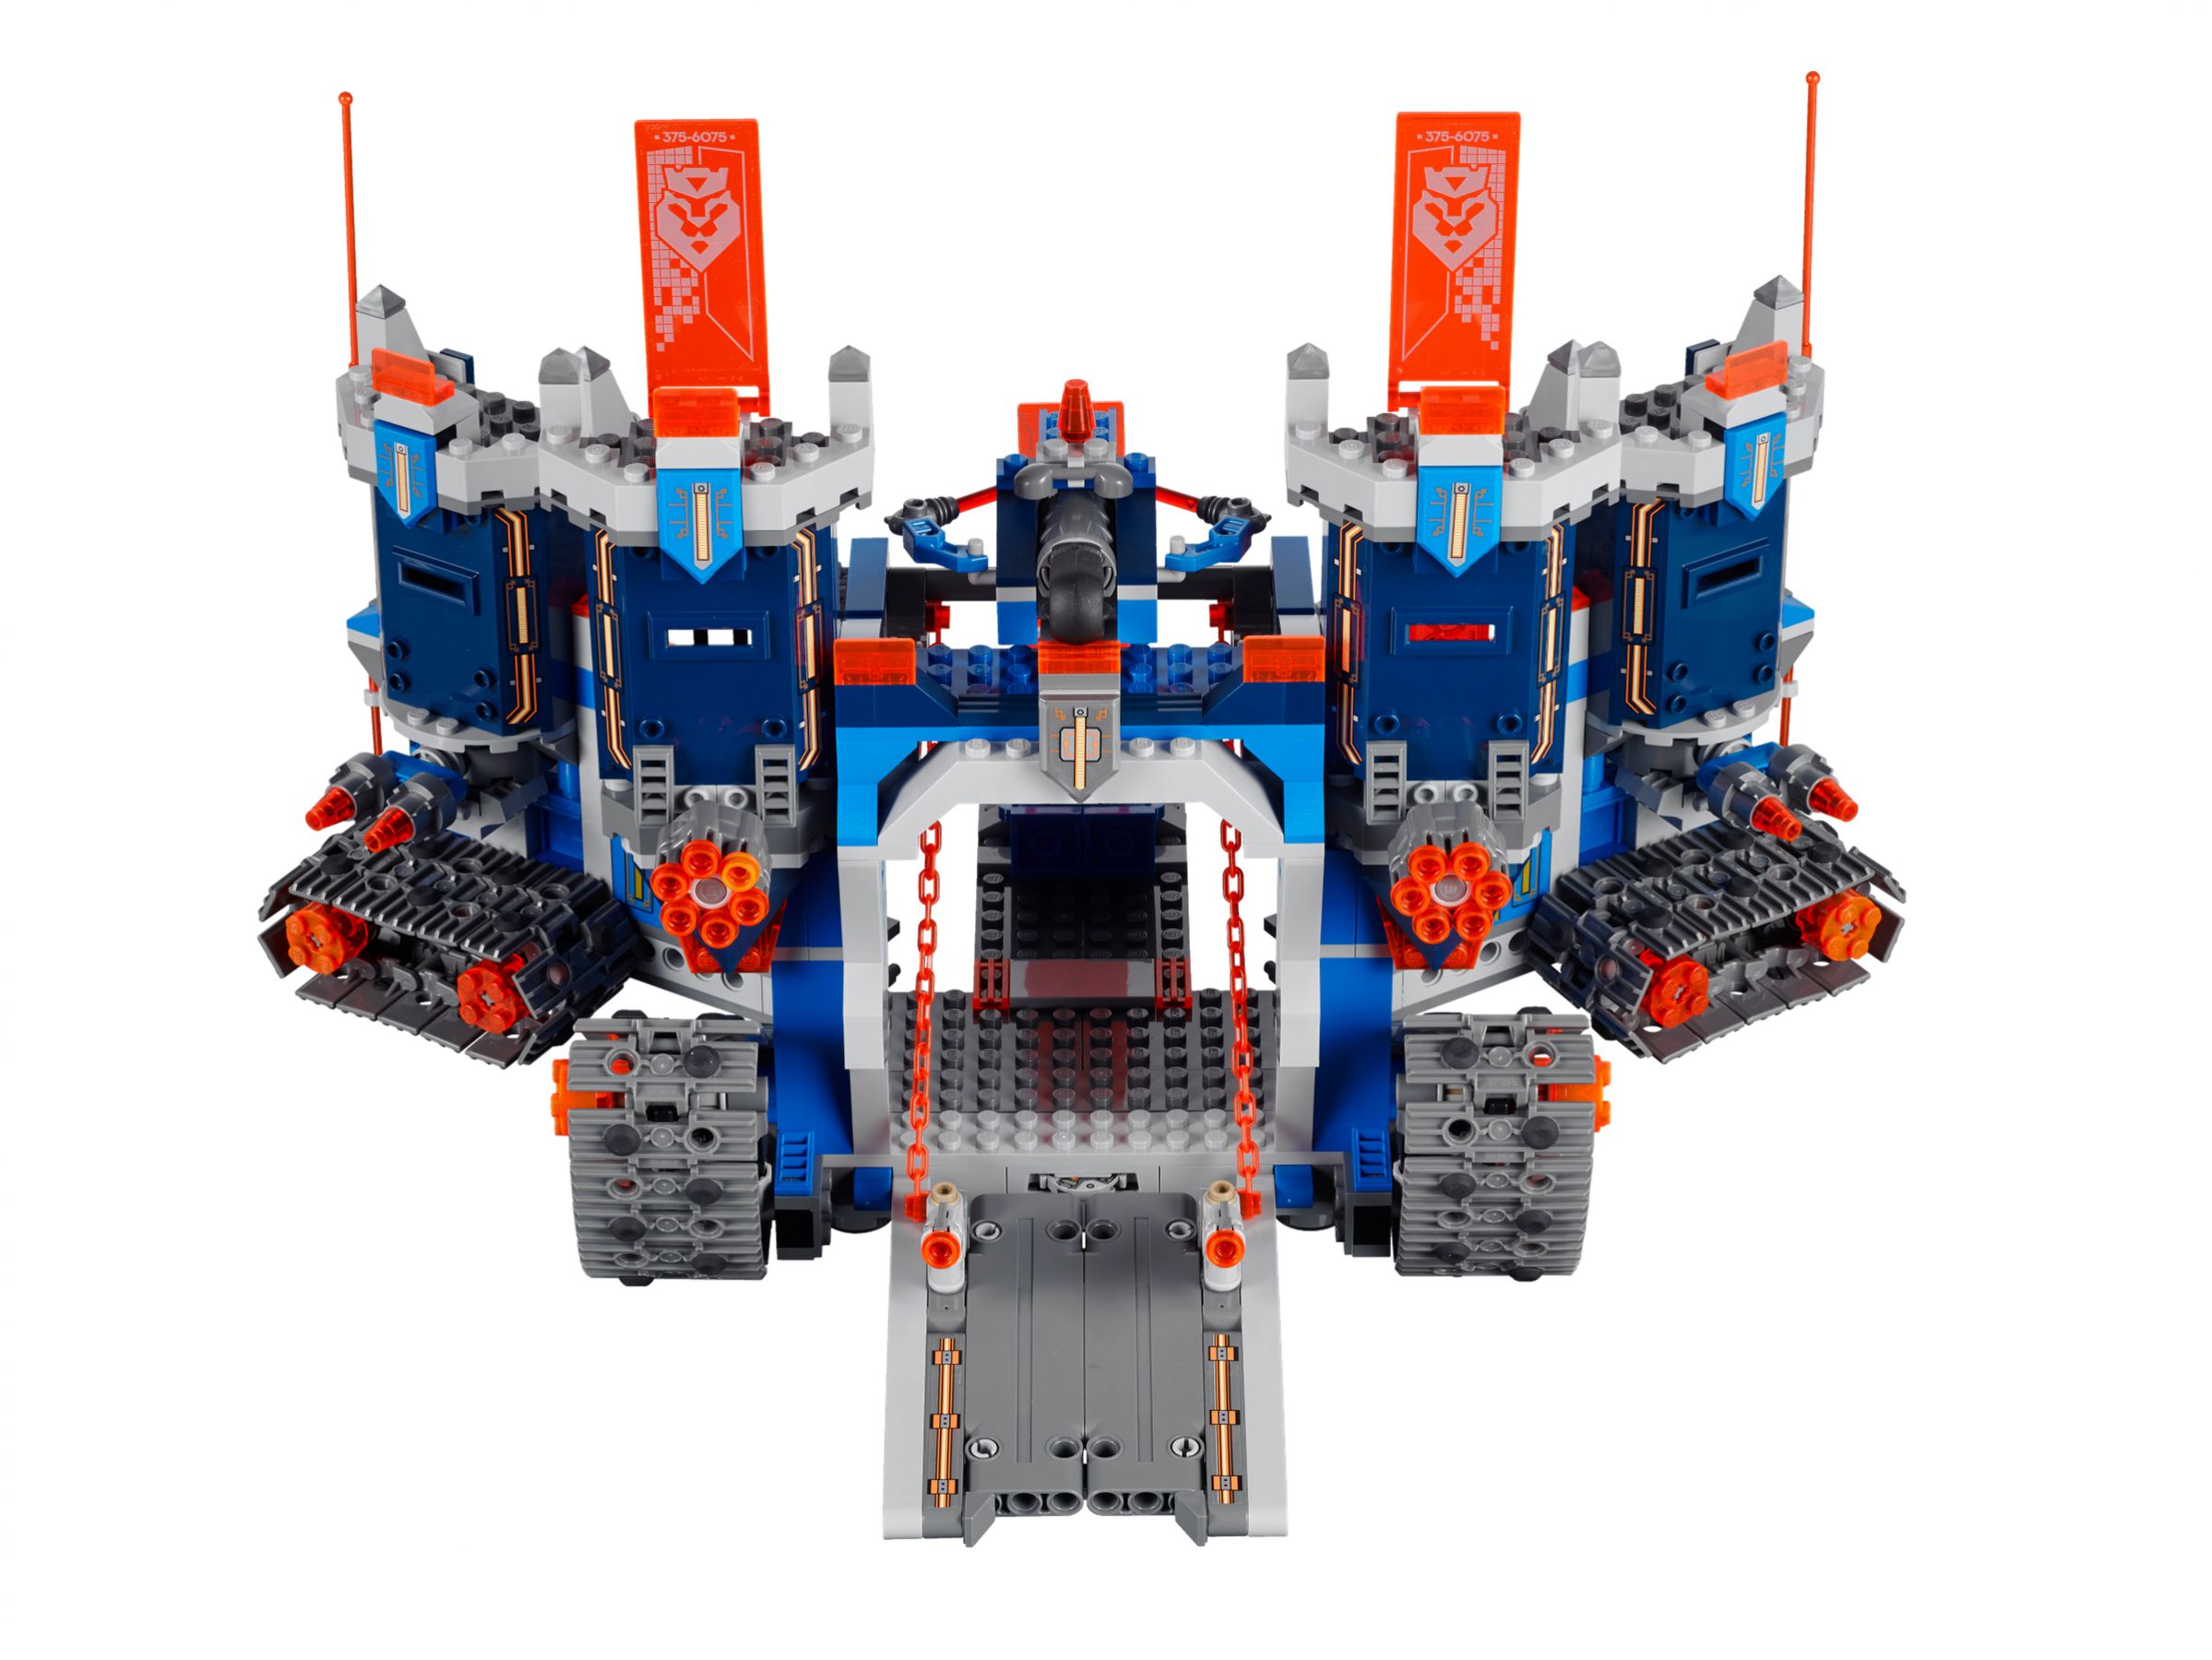 LEGO Nexo Knights 70317 Fortrex – Die rollende Festung LEGO_70317_alt4.jpg